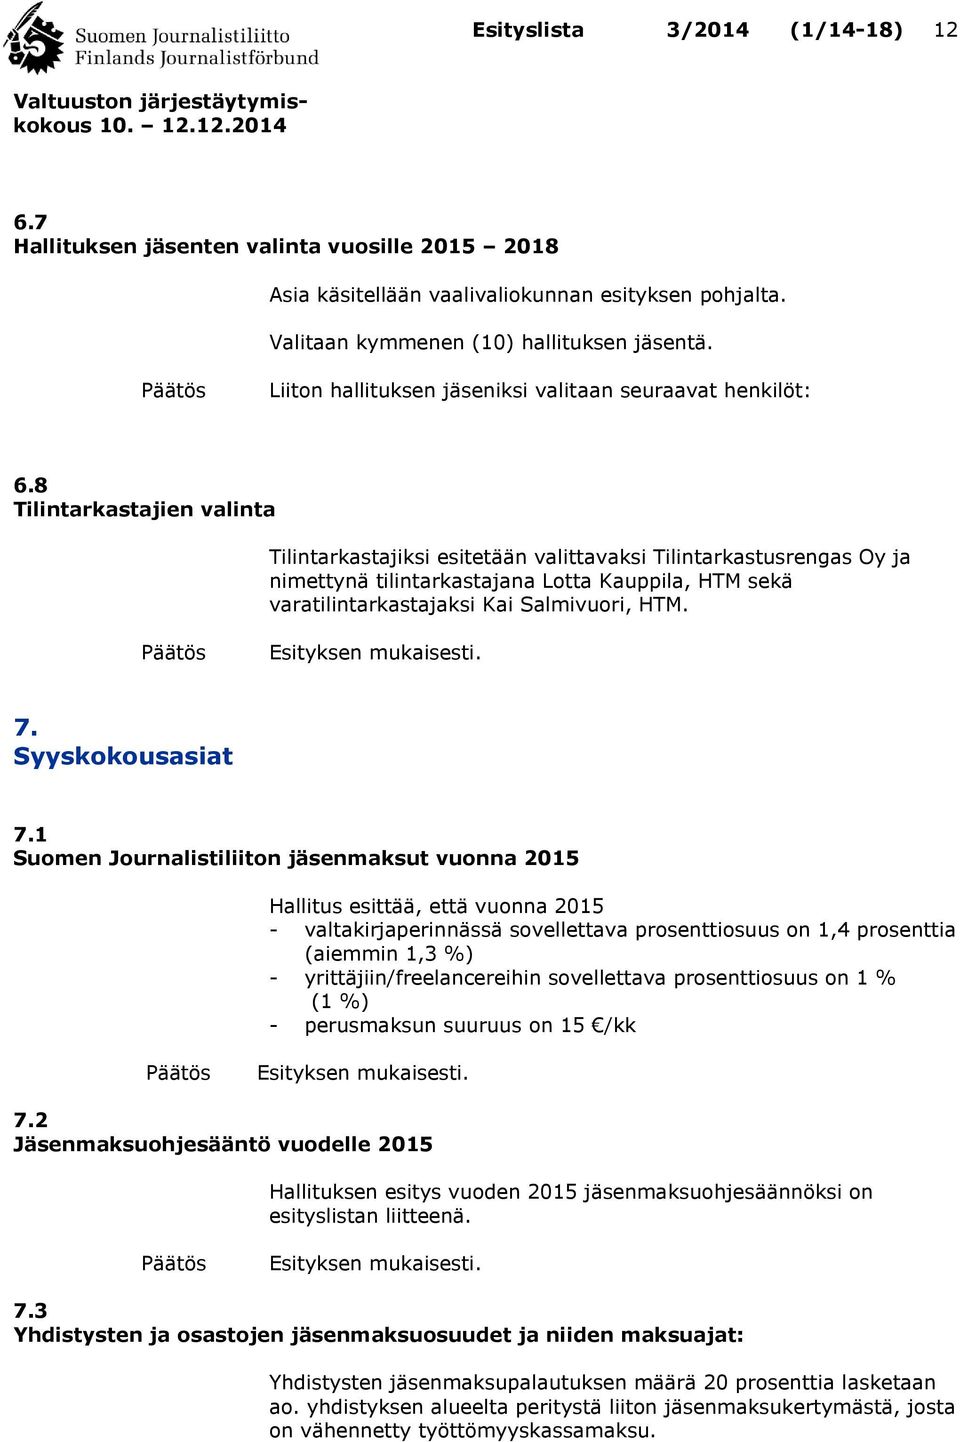 8 Tilintarkastajien valinta Tilintarkastajiksi esitetään valittavaksi Tilintarkastusrengas Oy ja nimettynä tilintarkastajana Lotta Kauppila, HTM sekä varatilintarkastajaksi Kai Salmivuori, HTM. 7.